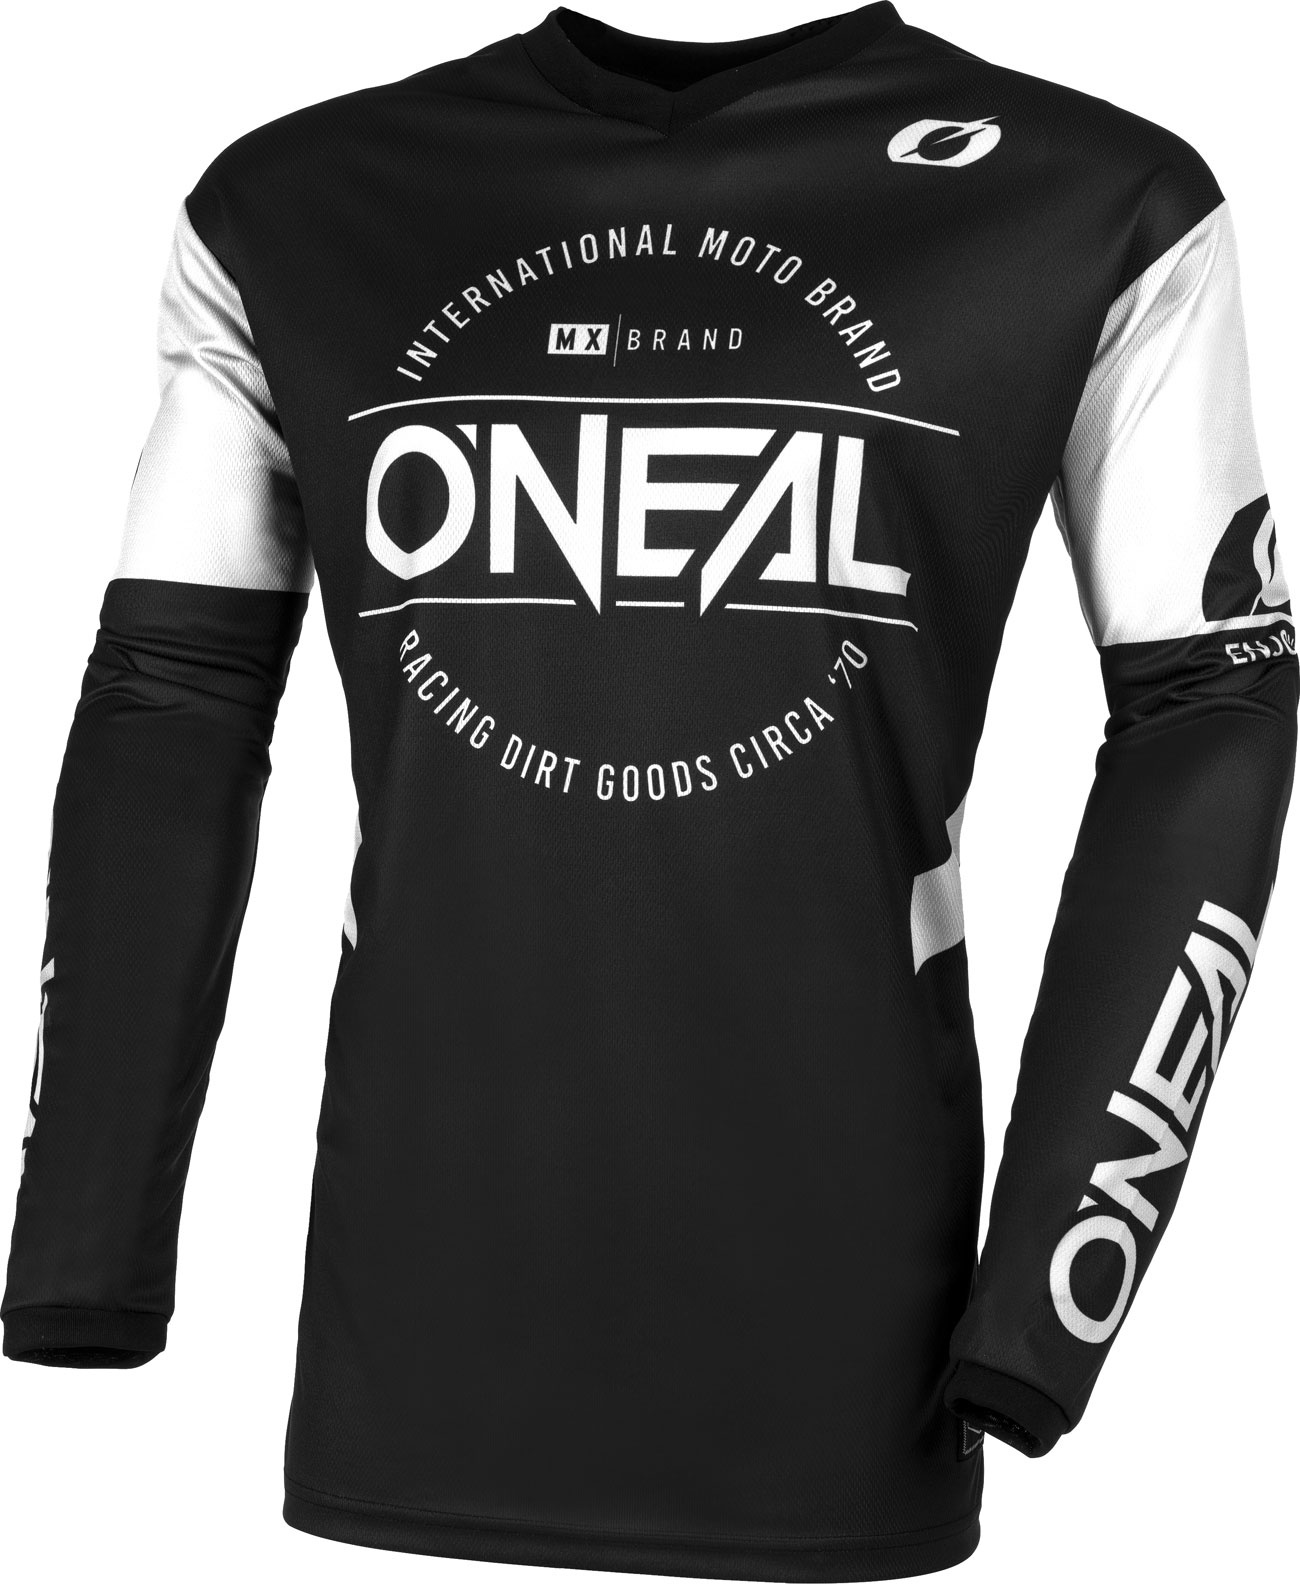 ONeal Element Brand S23, jersey - Noir/Blanc - XL